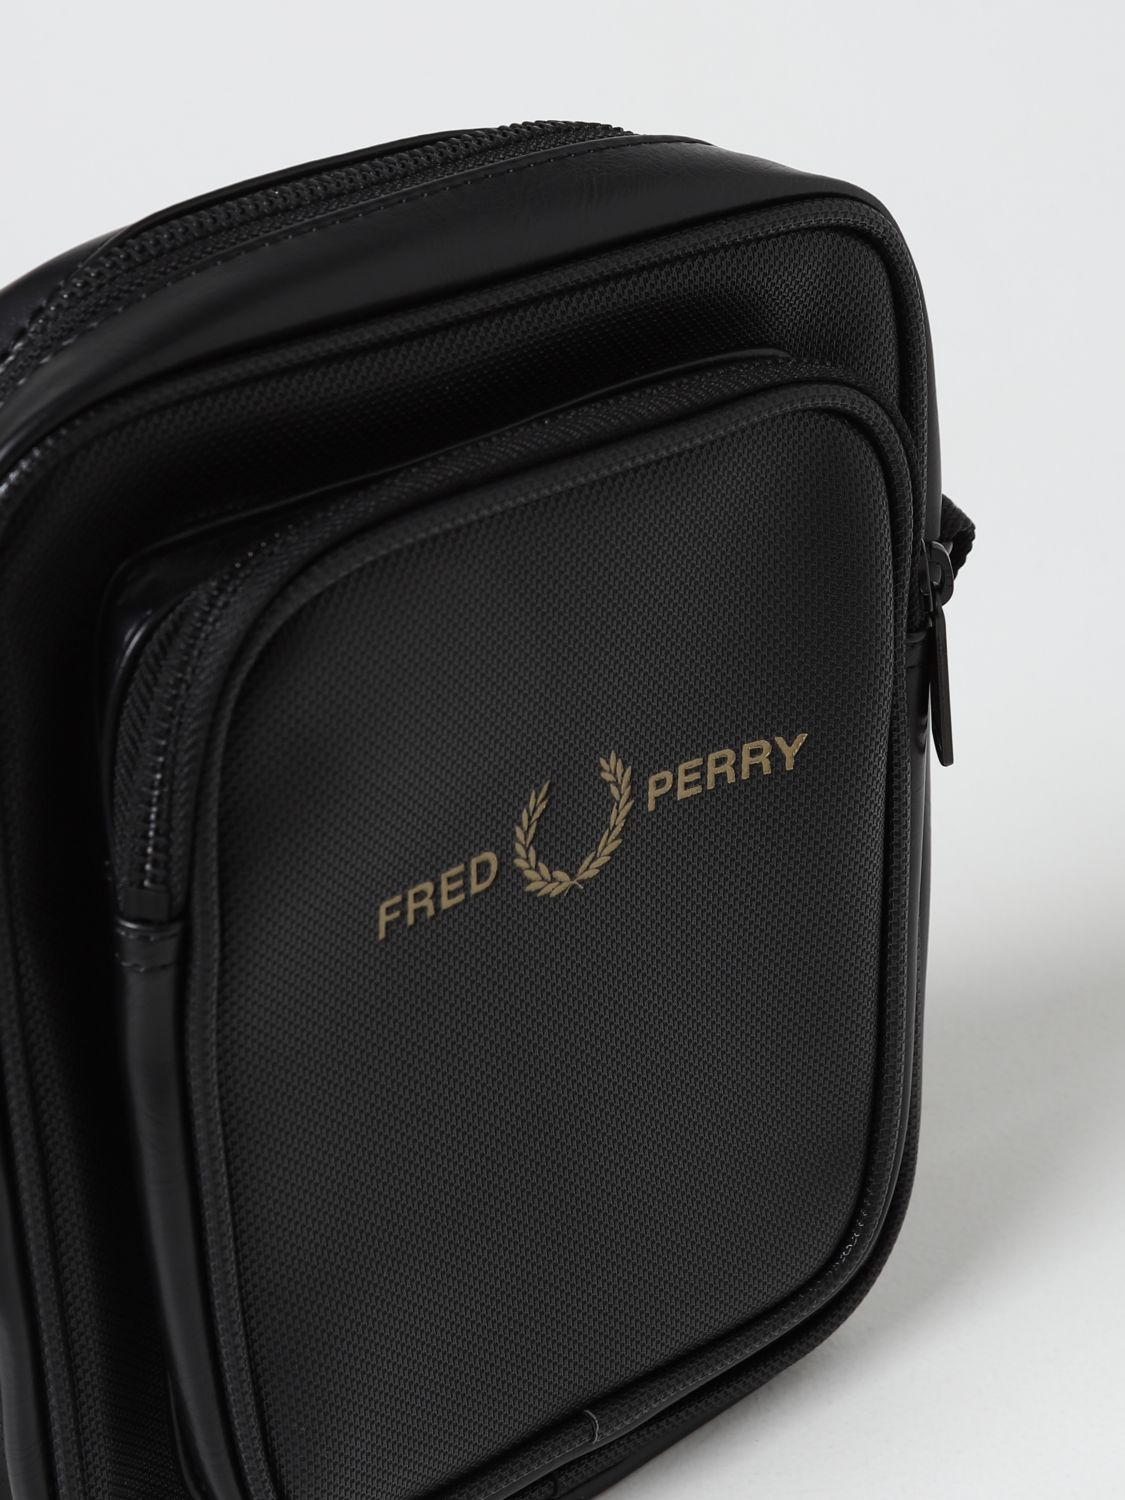 ショルダーバッグ Fred Perry: バッグ メンズ Fred Perry ブラック 3